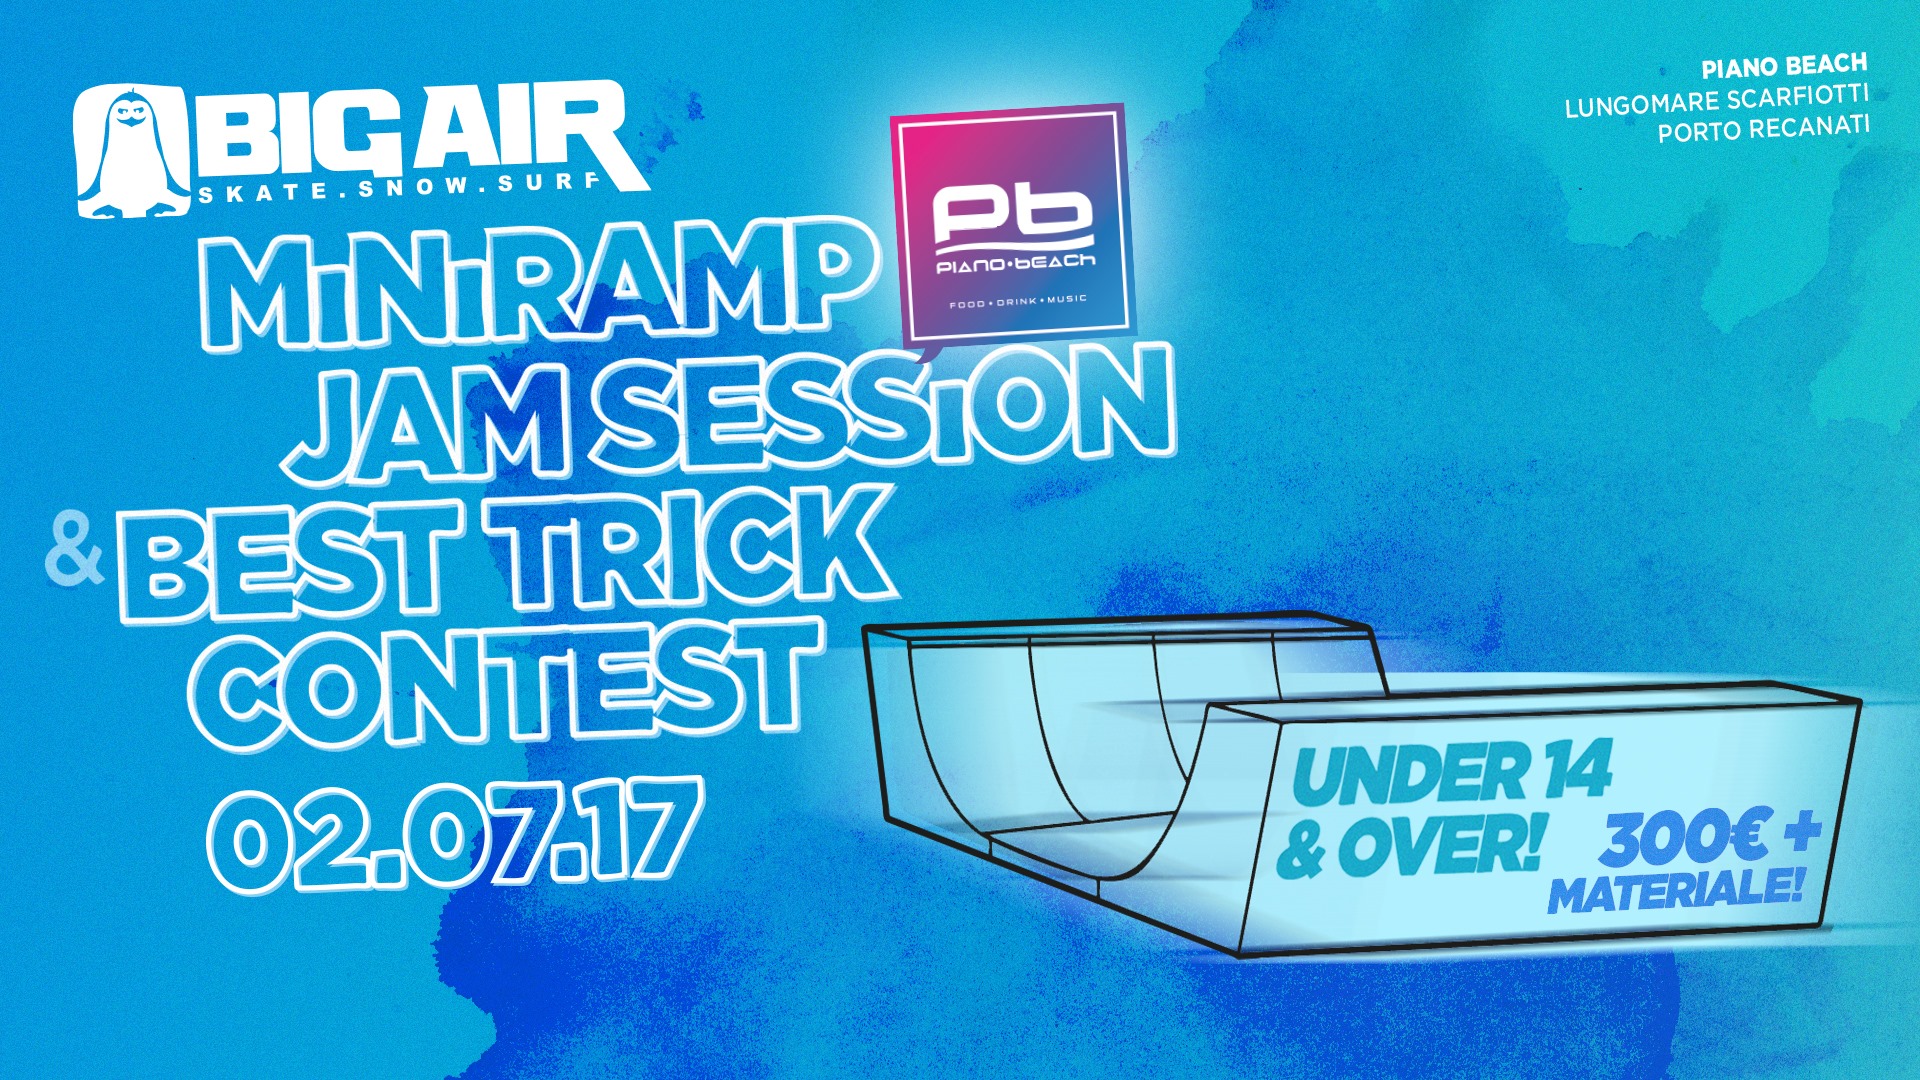 Big Air & Piano Beach Miniramp Skateboard Contest!